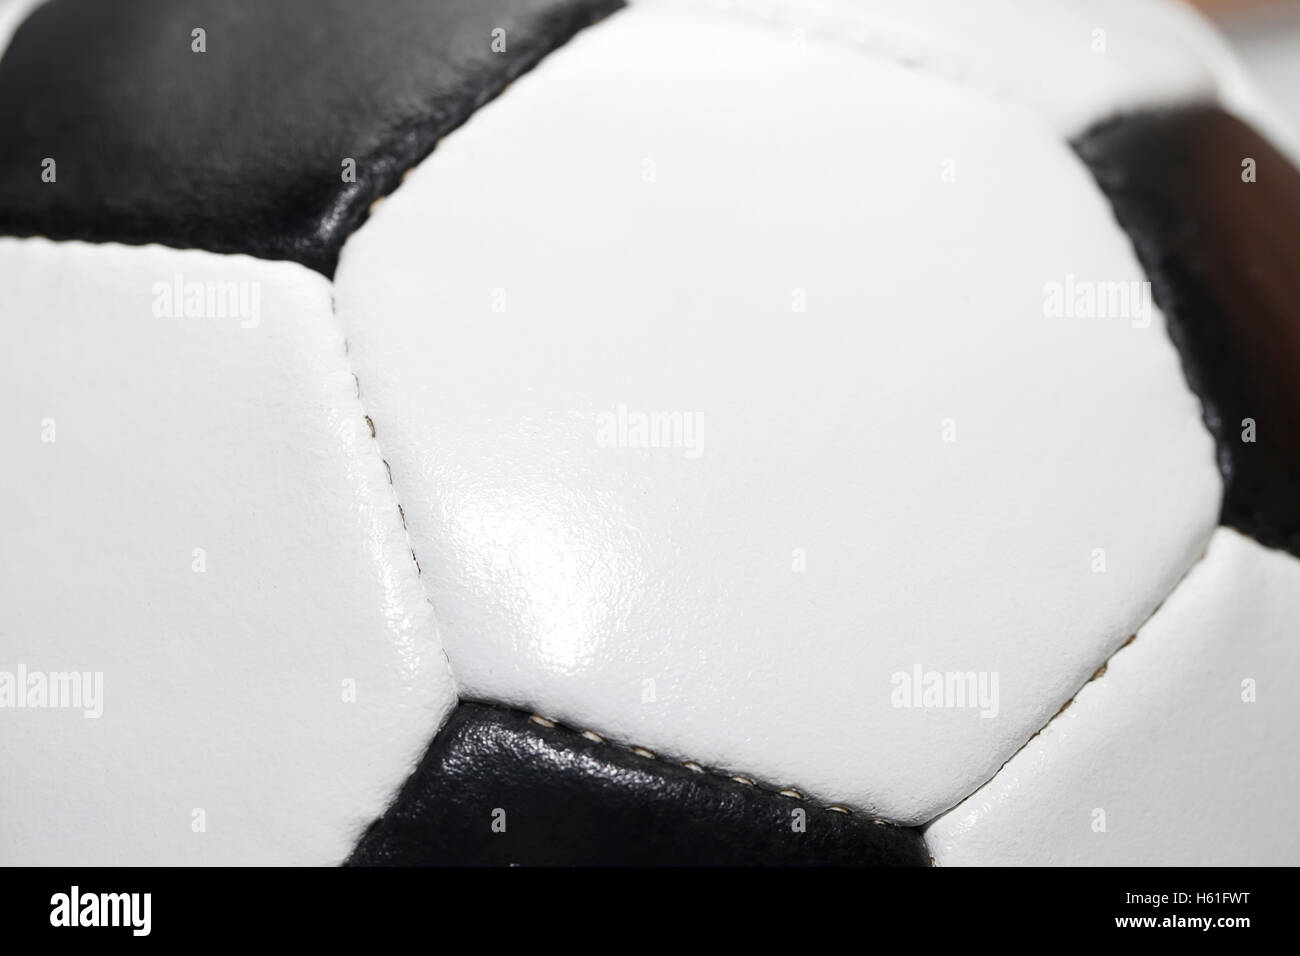 Le schéma classique d'un ballon de foot, noir et blanc, close-up contexte Banque D'Images